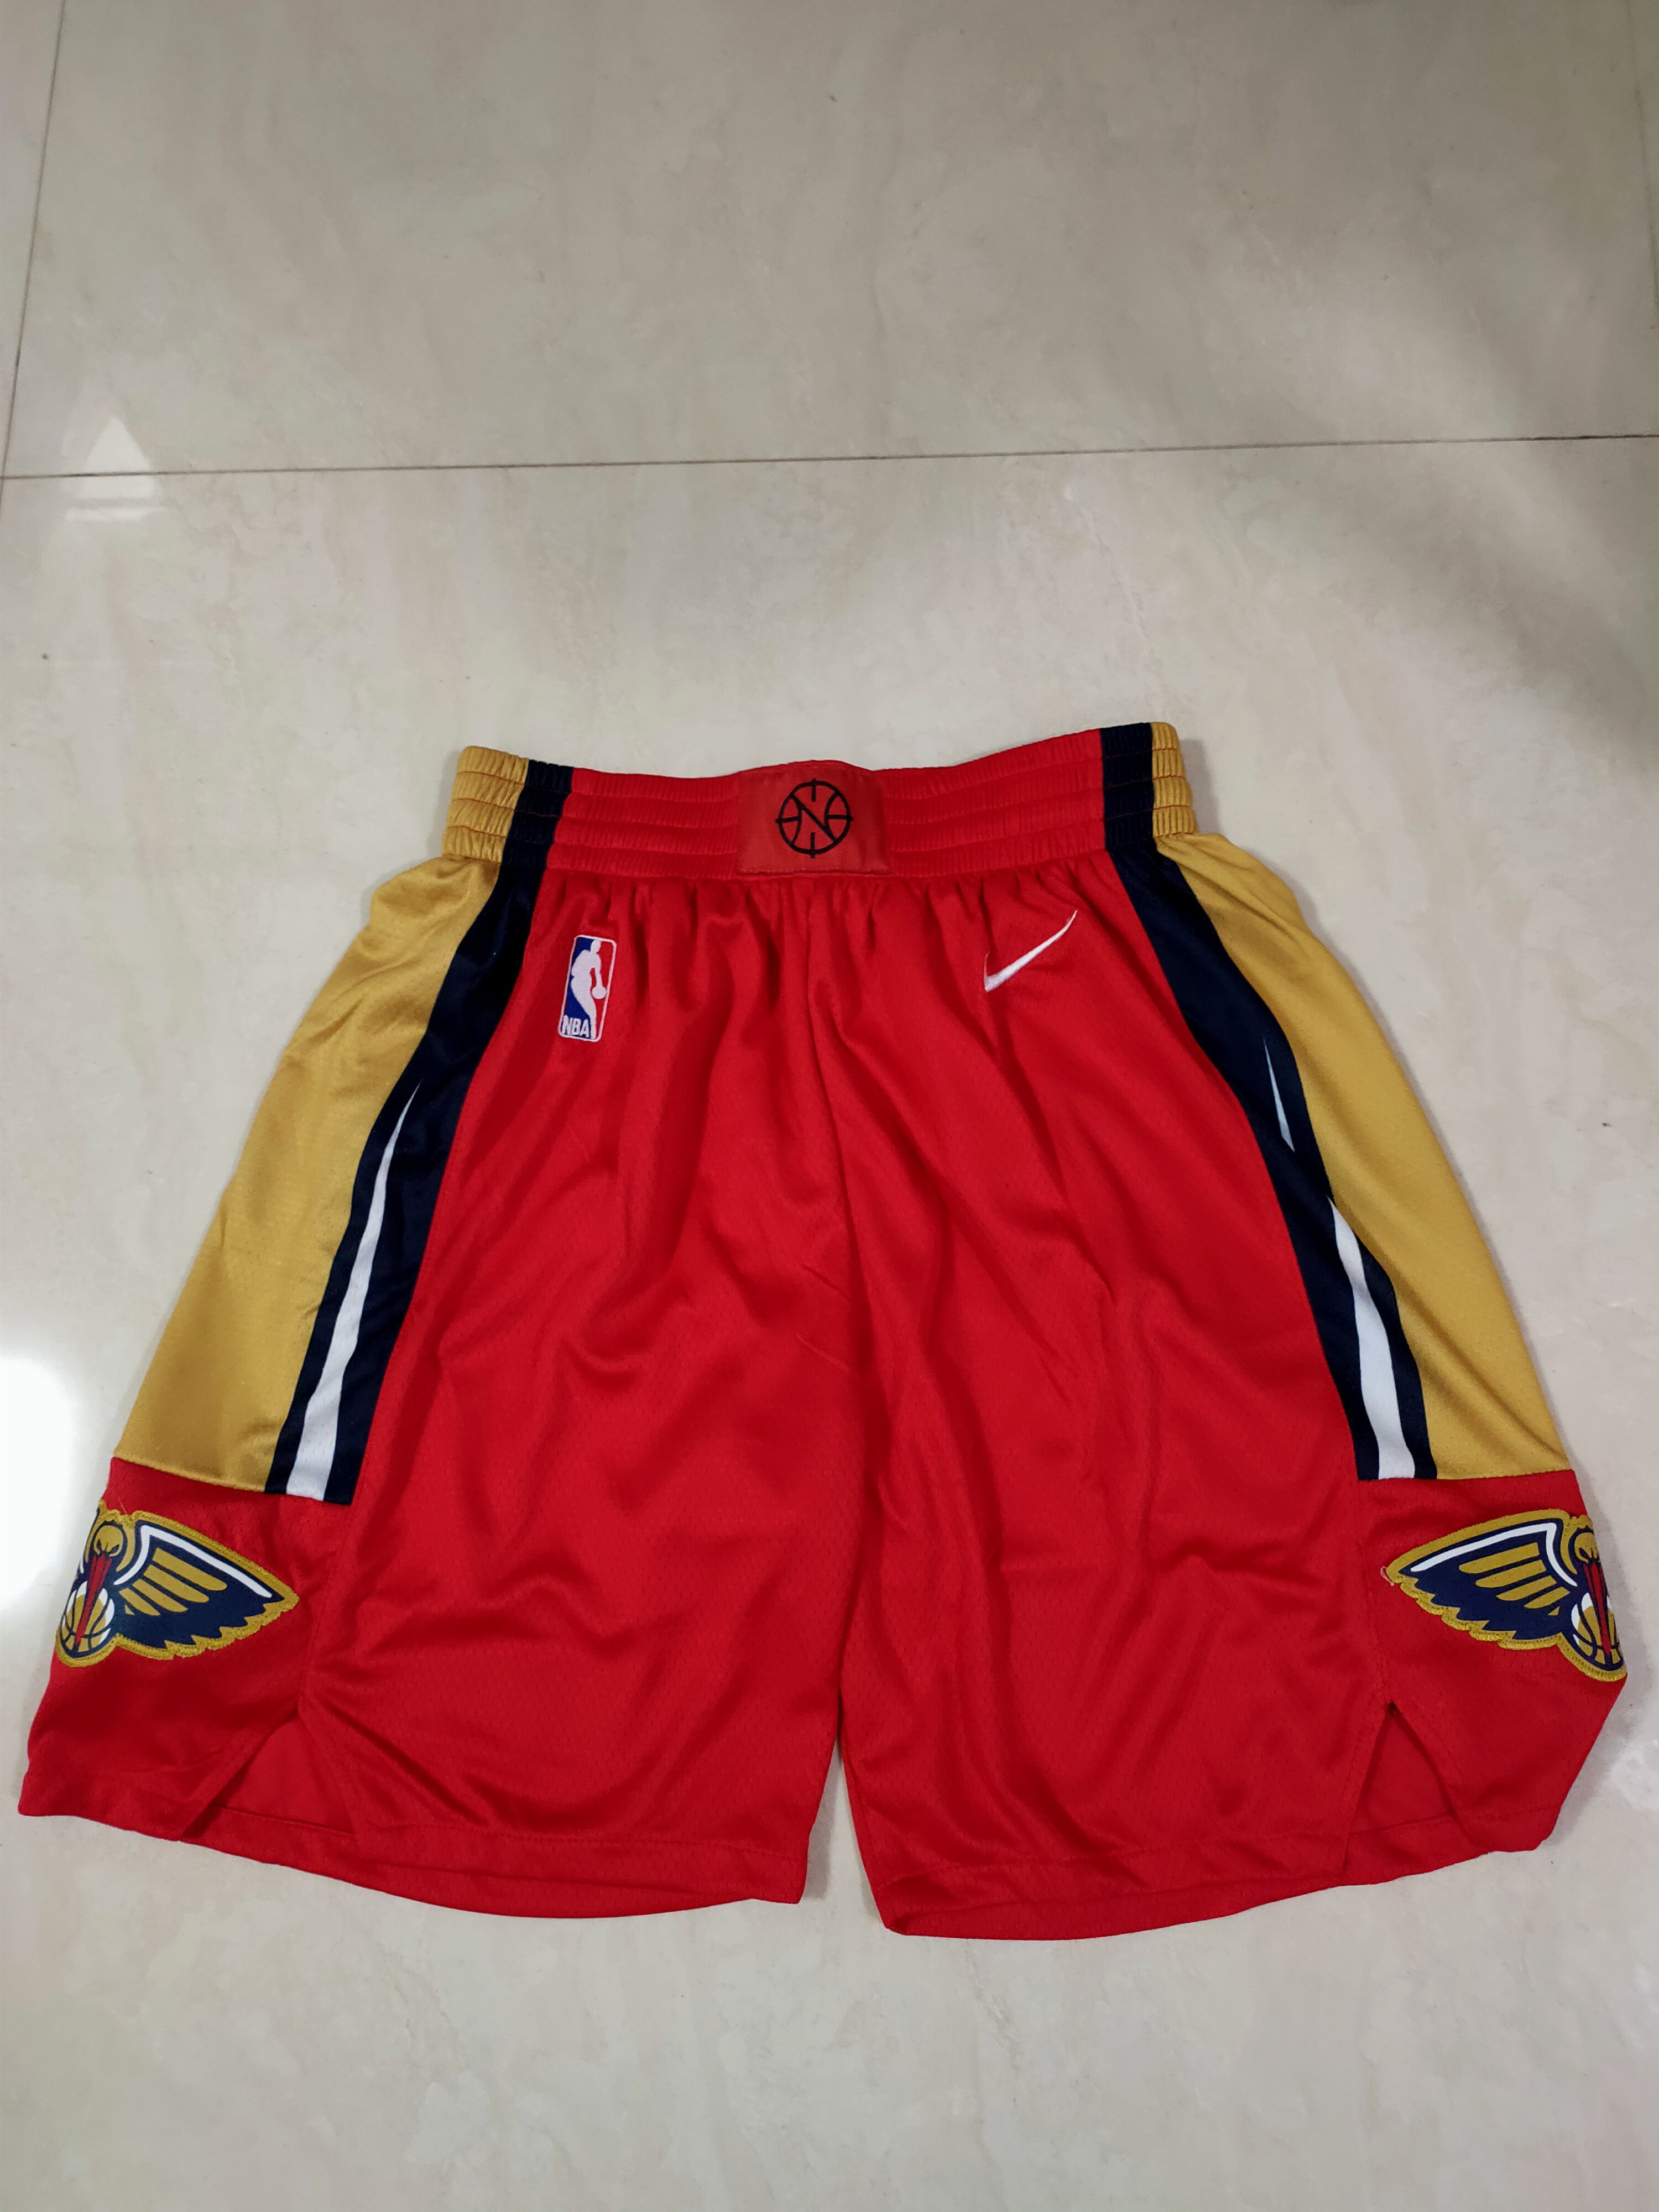 Men NBA New Orleans Pelicans Red Shorts 0416->minnesota timberwolves->NBA Jersey